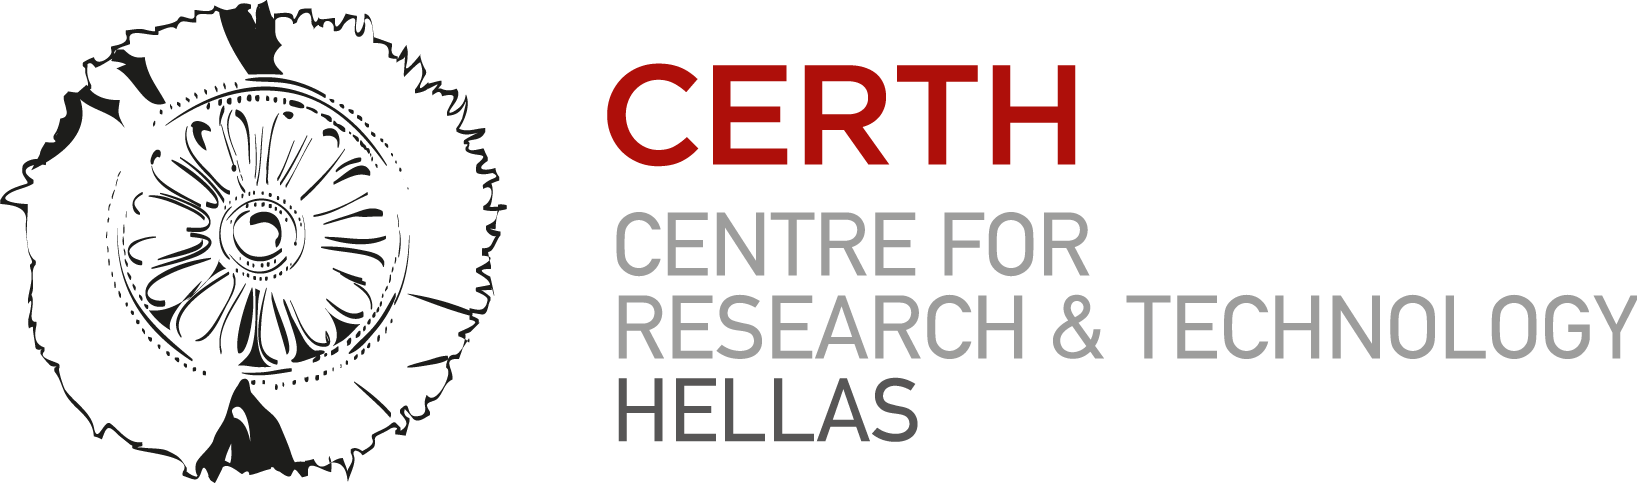 Centro de Investigación y Tecnología-Hellas